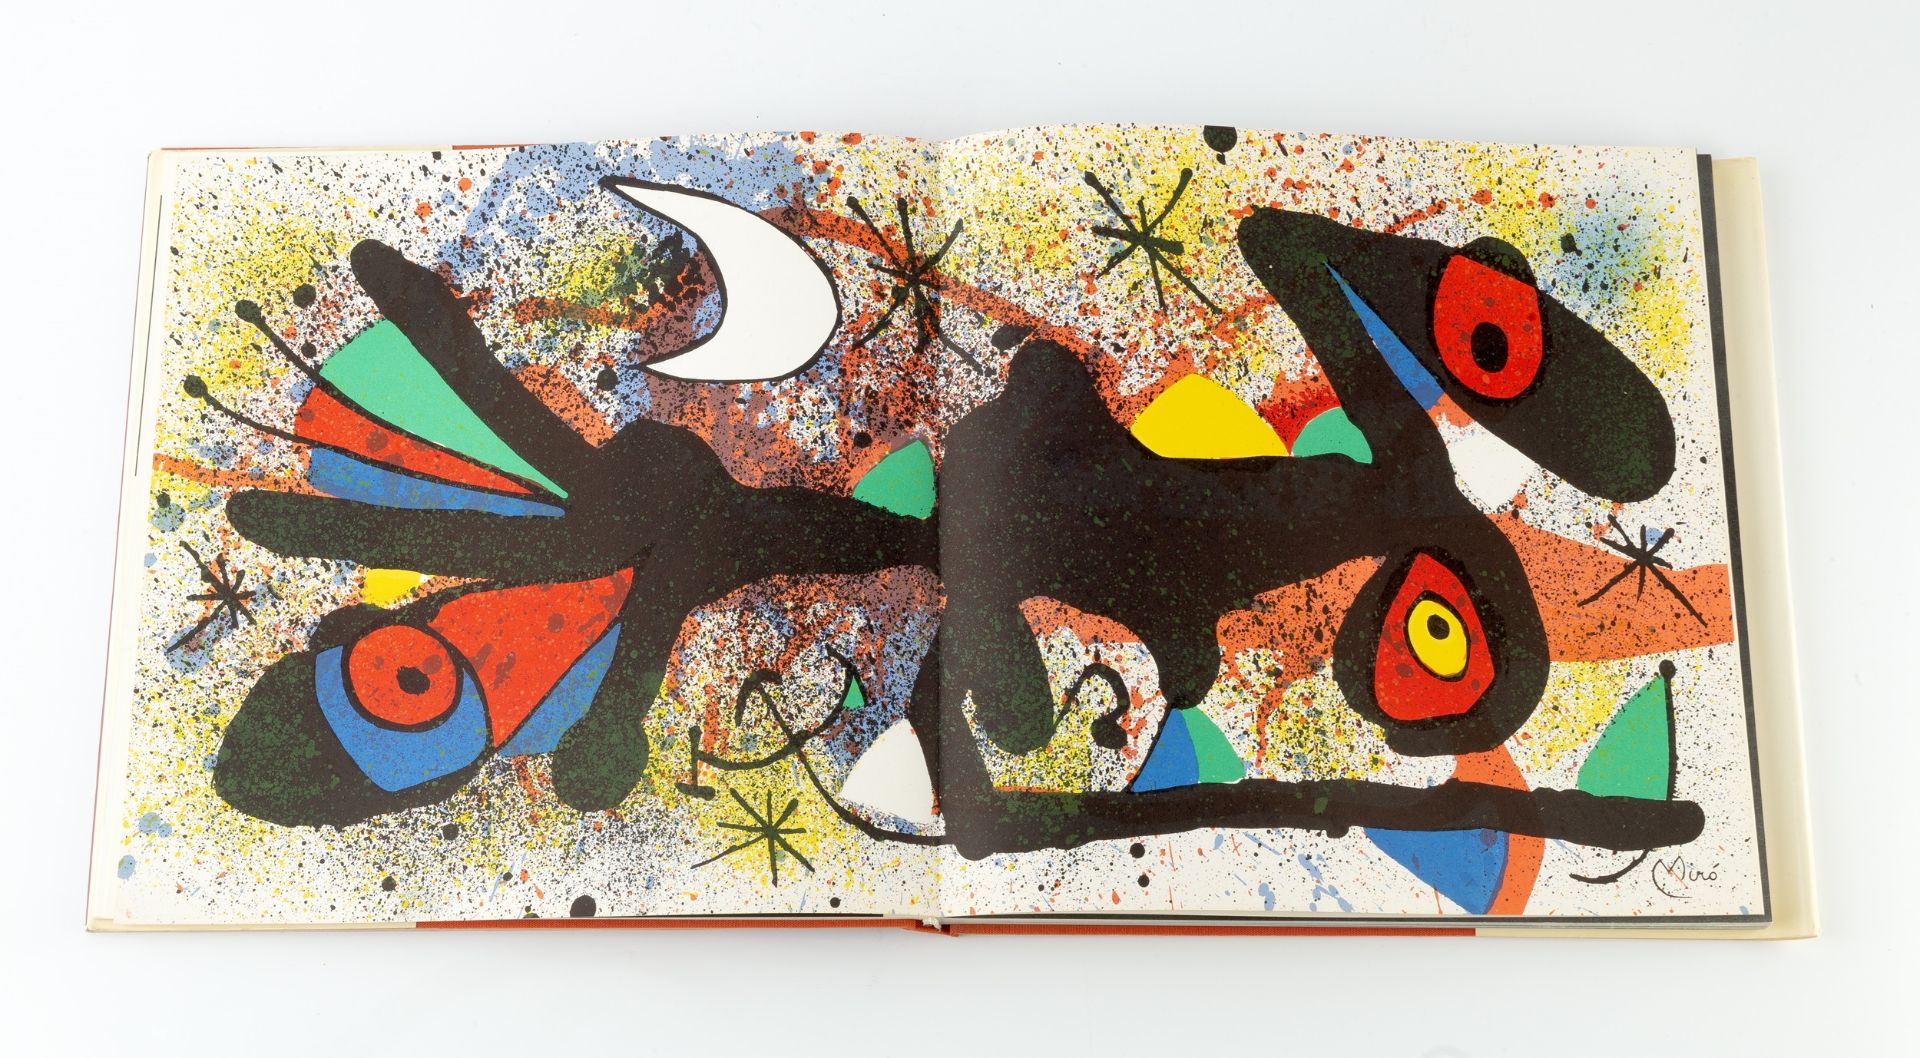 Joan Miró and Josep Llorens Artigas Keramik by Jose Pierre and Jose Corredor-Matheos published by